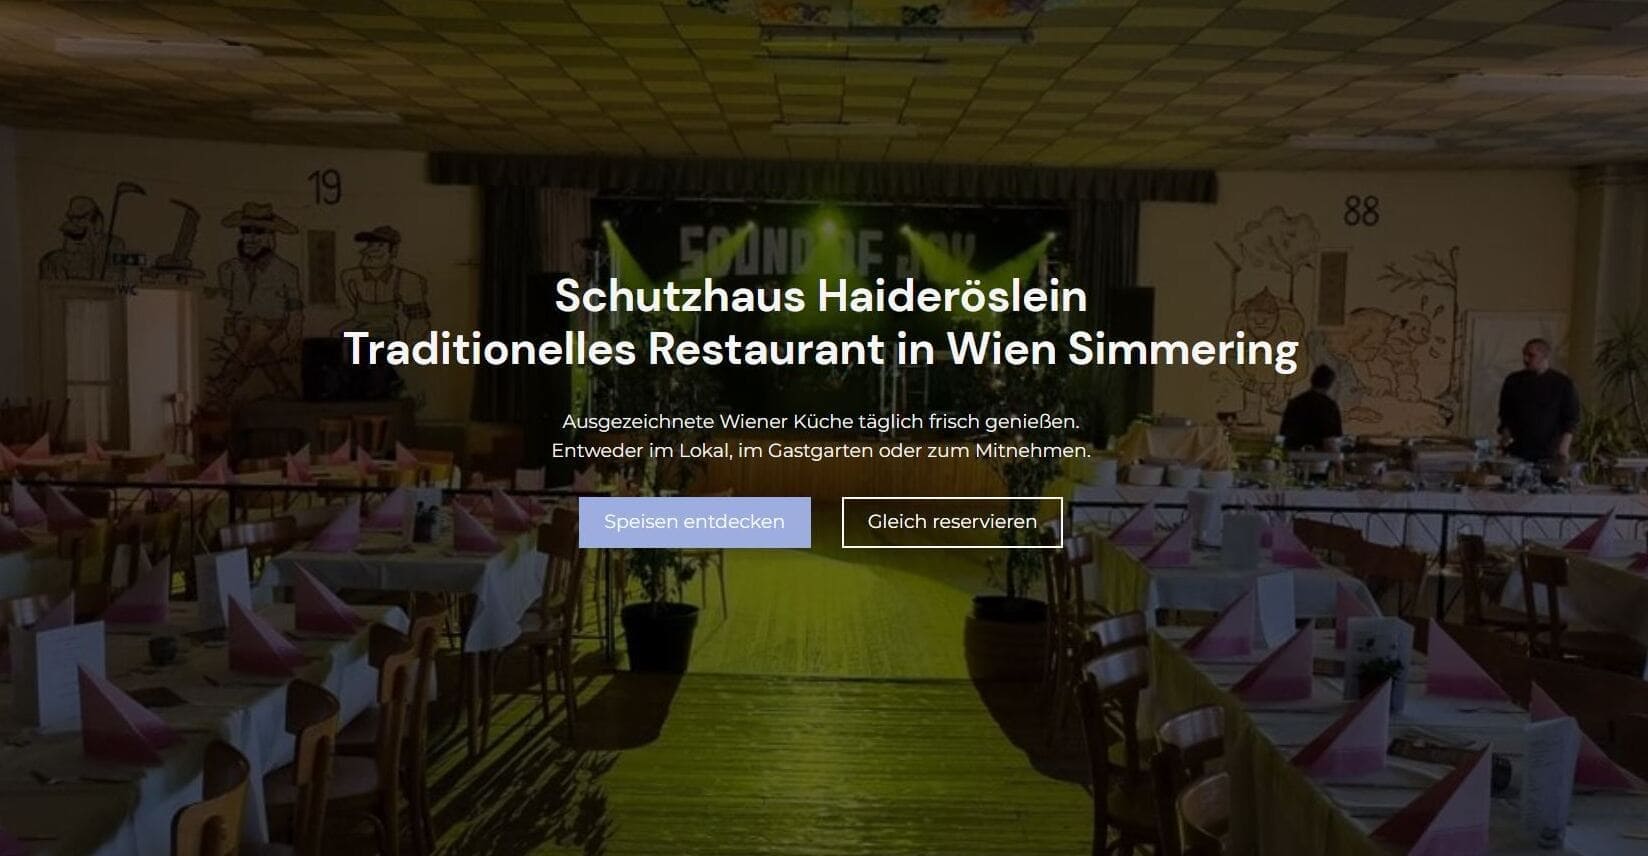 (c) Schutzhaus-haideroeslein.at